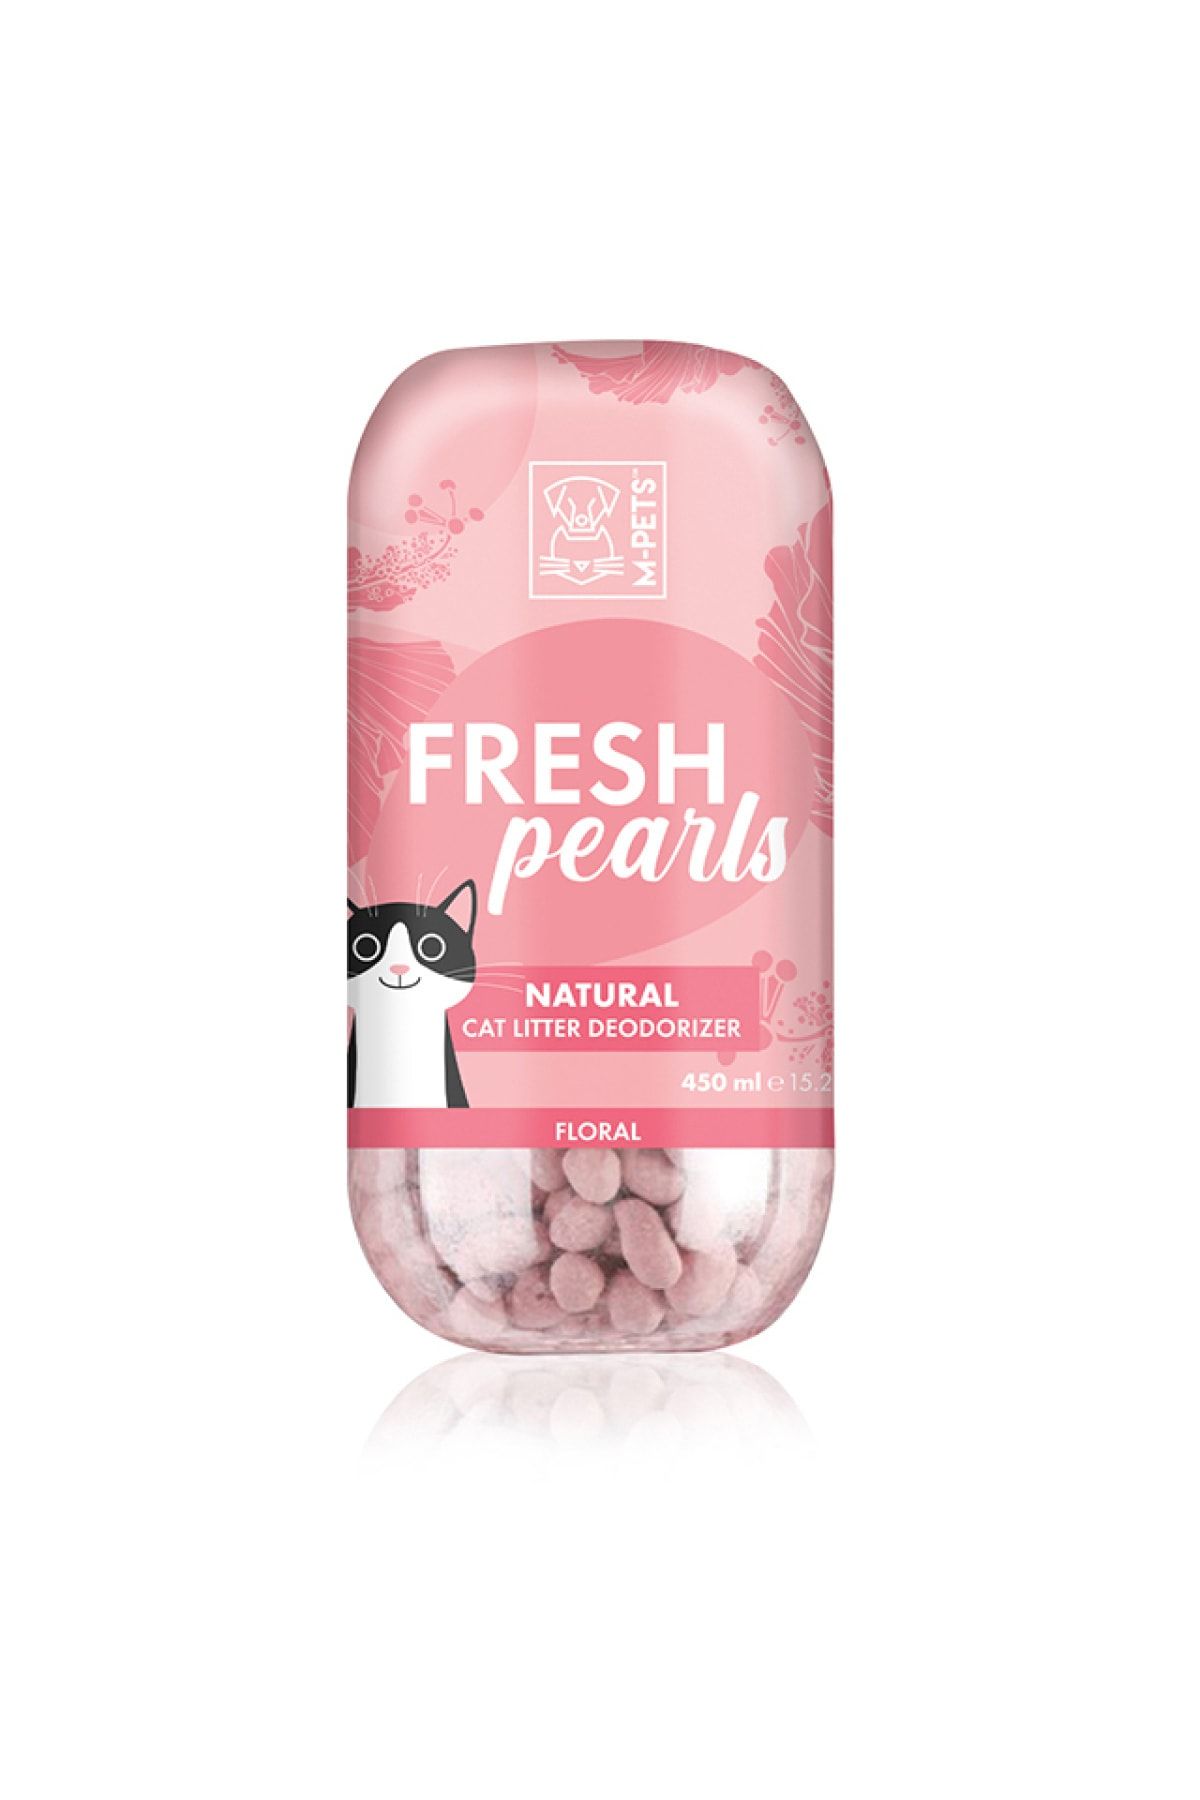 M-PETS Fresh Pearls Kedi Kumu Deodorant Çiçek Kokulu 450ml 20116607